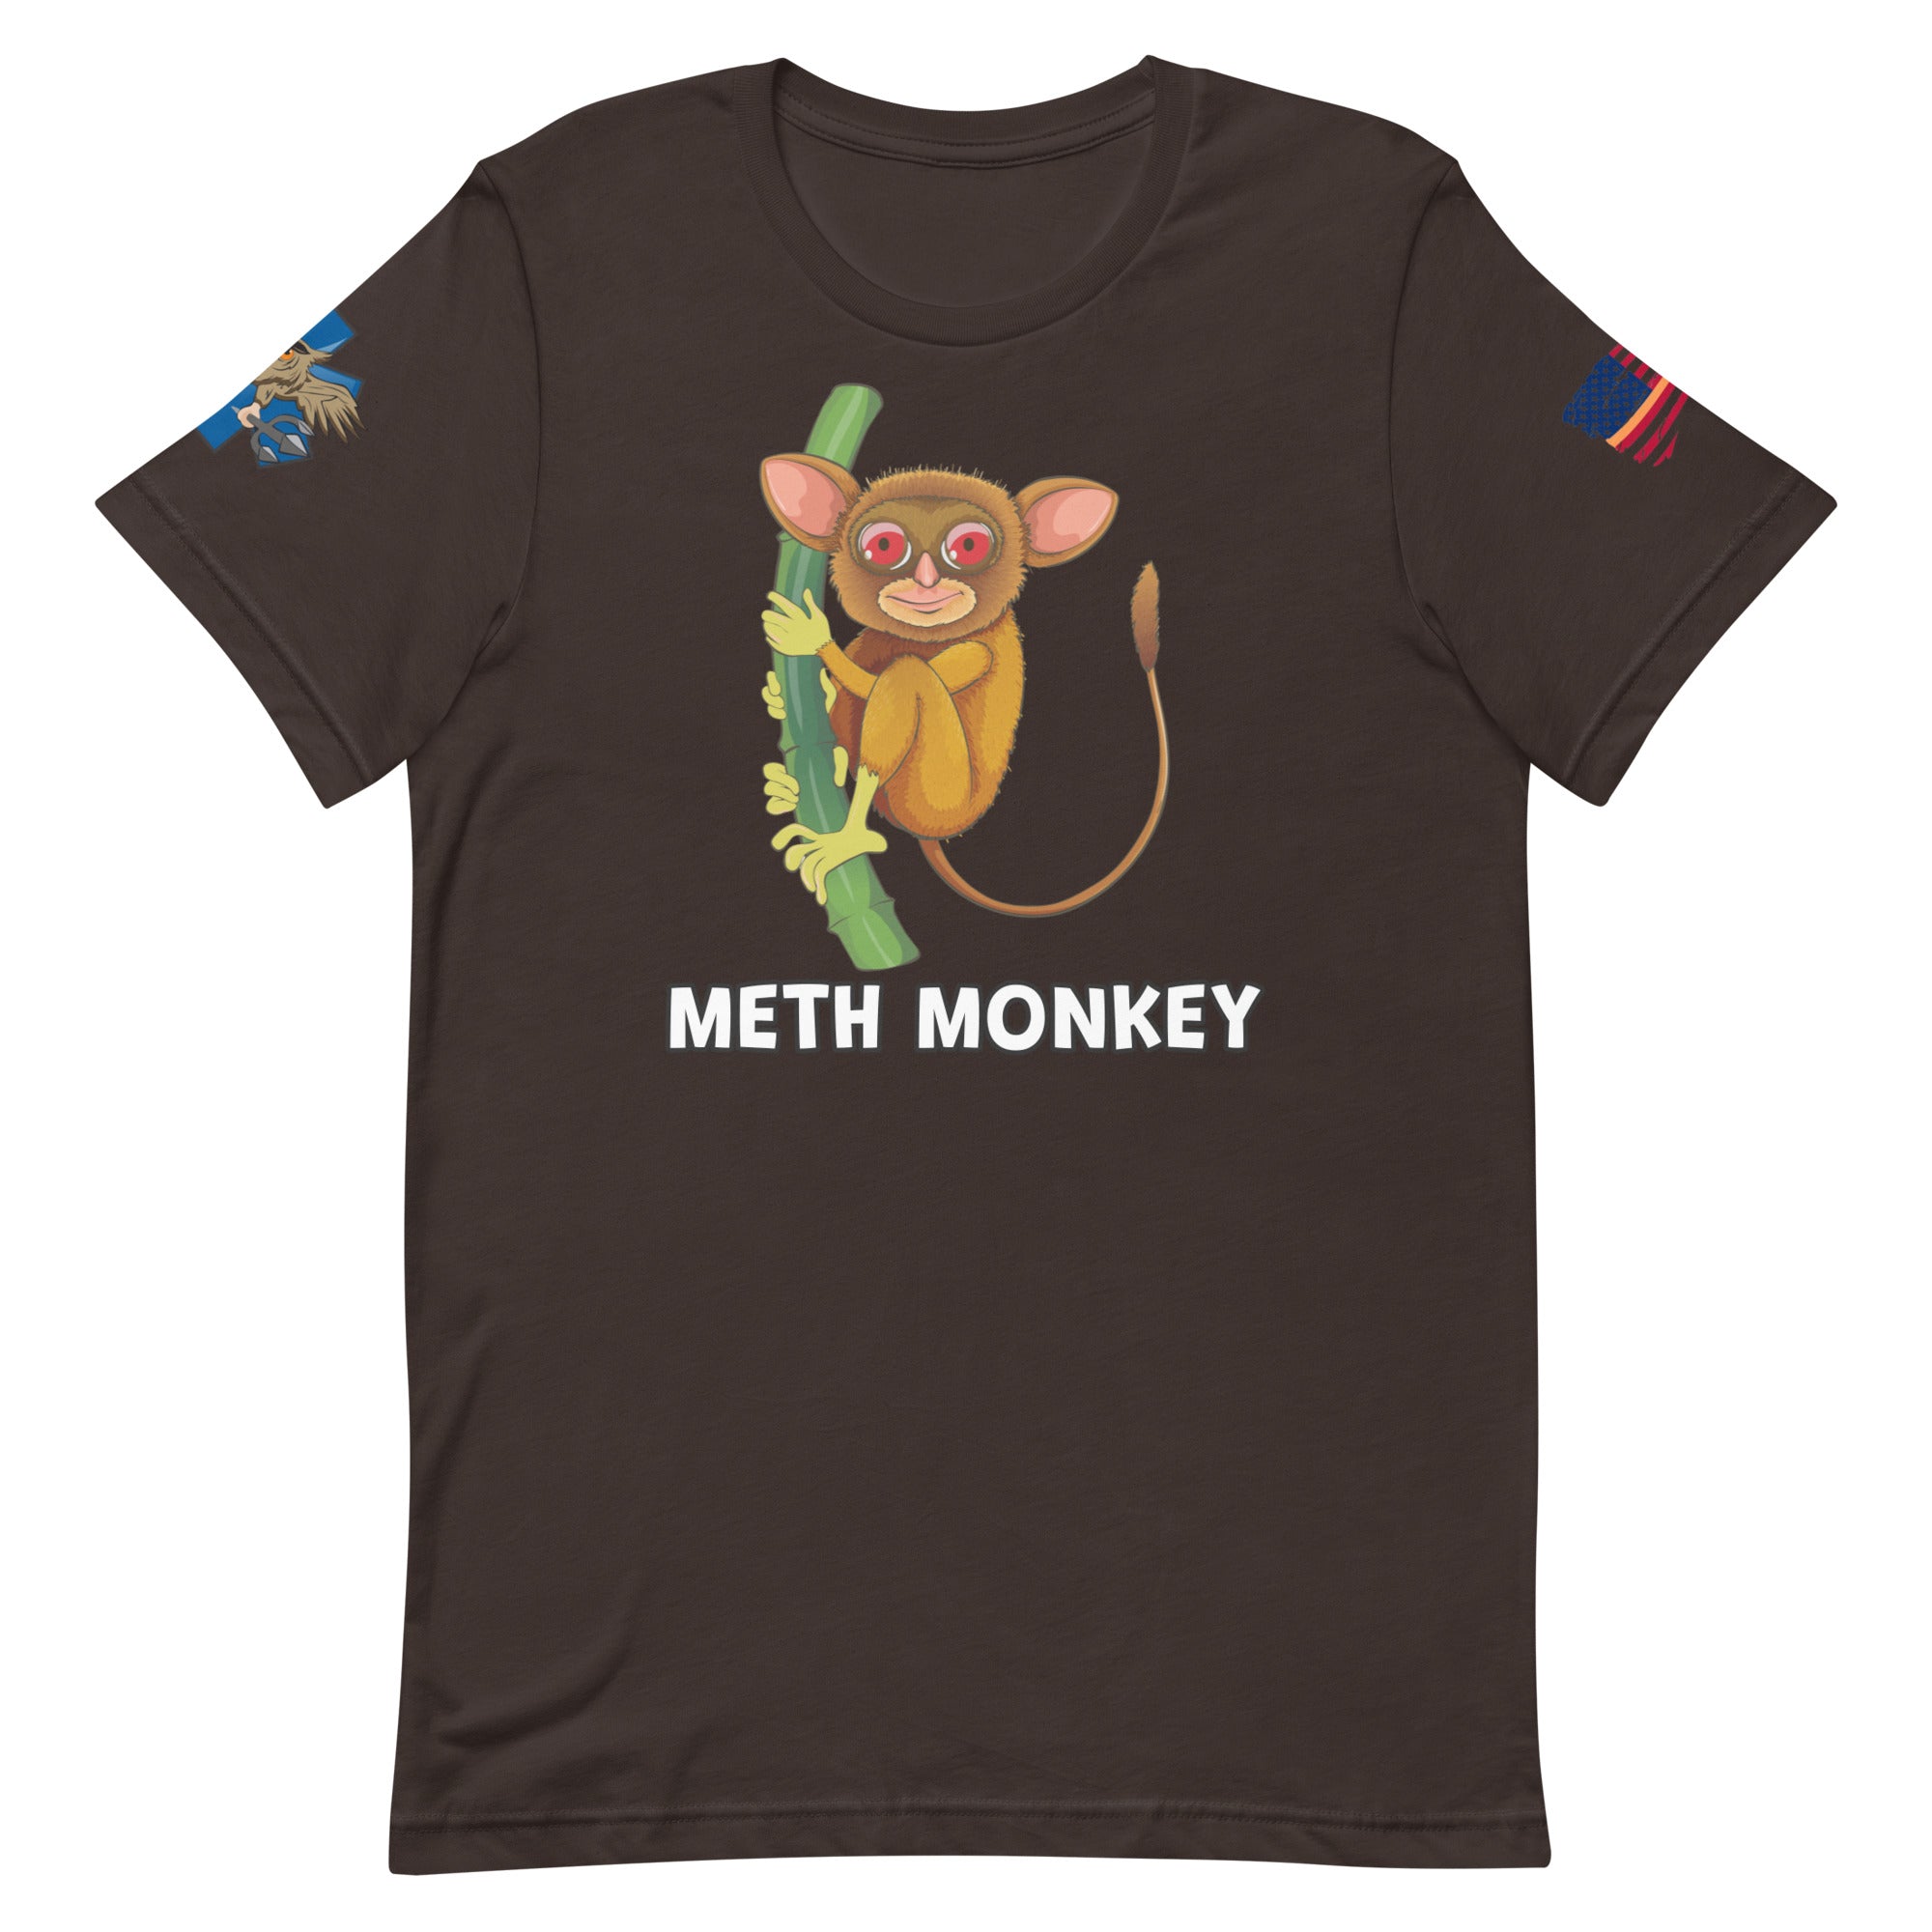 'Meth Monkey' t-shirt